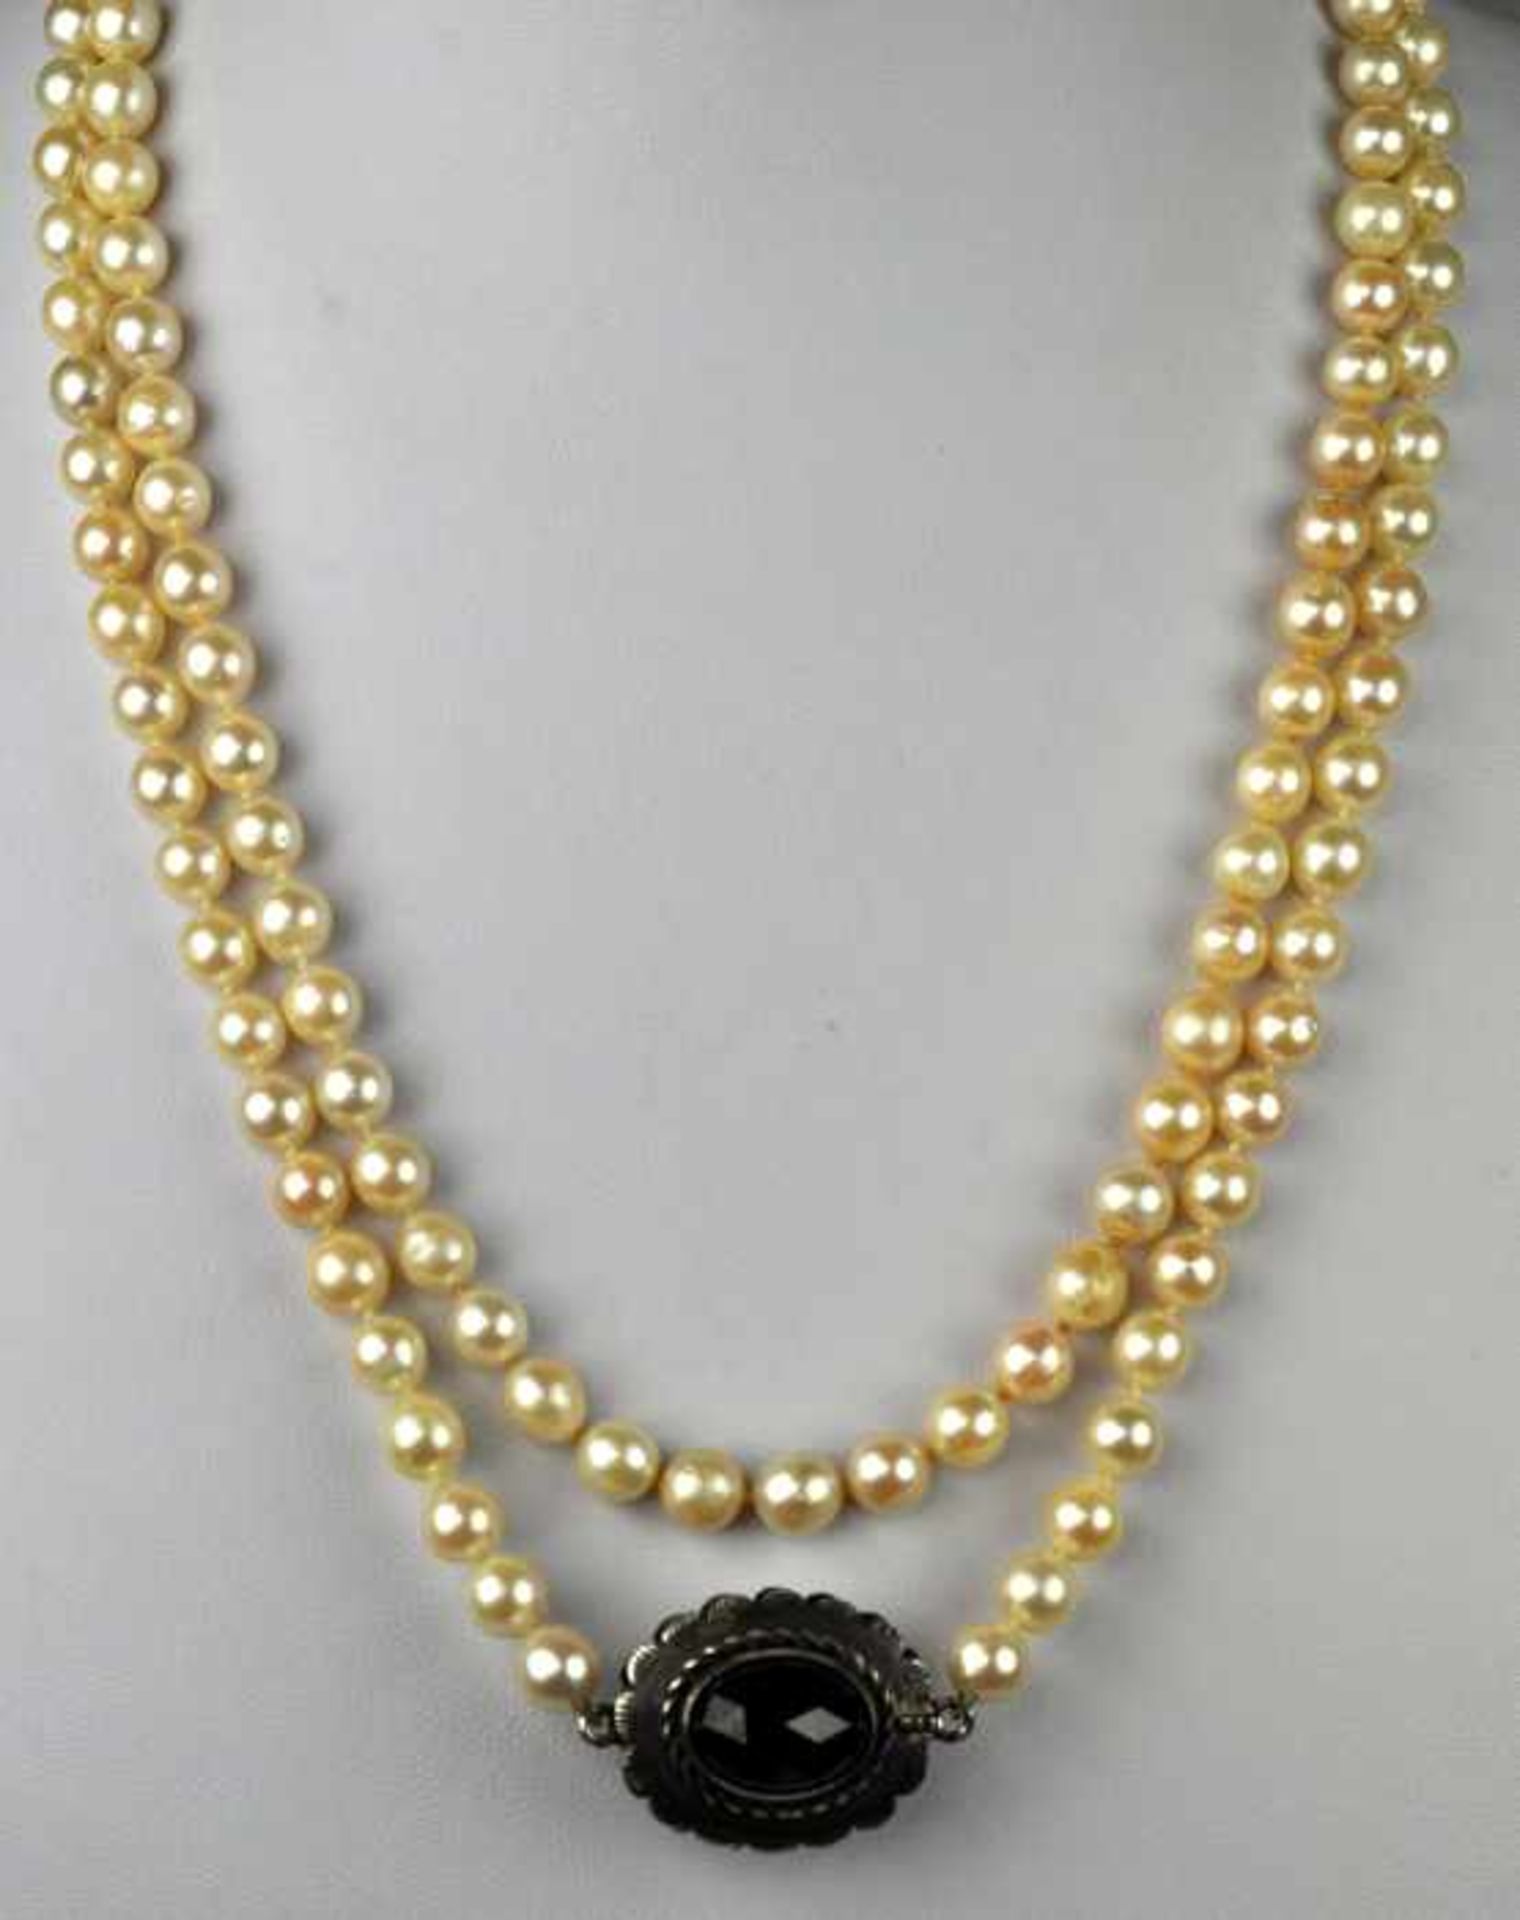 LANGE ZUCHTPERLENKETTE gleichmässig sortierte Perlen um 6,5mm, geknotet, Silberverschluß in - Bild 2 aus 2